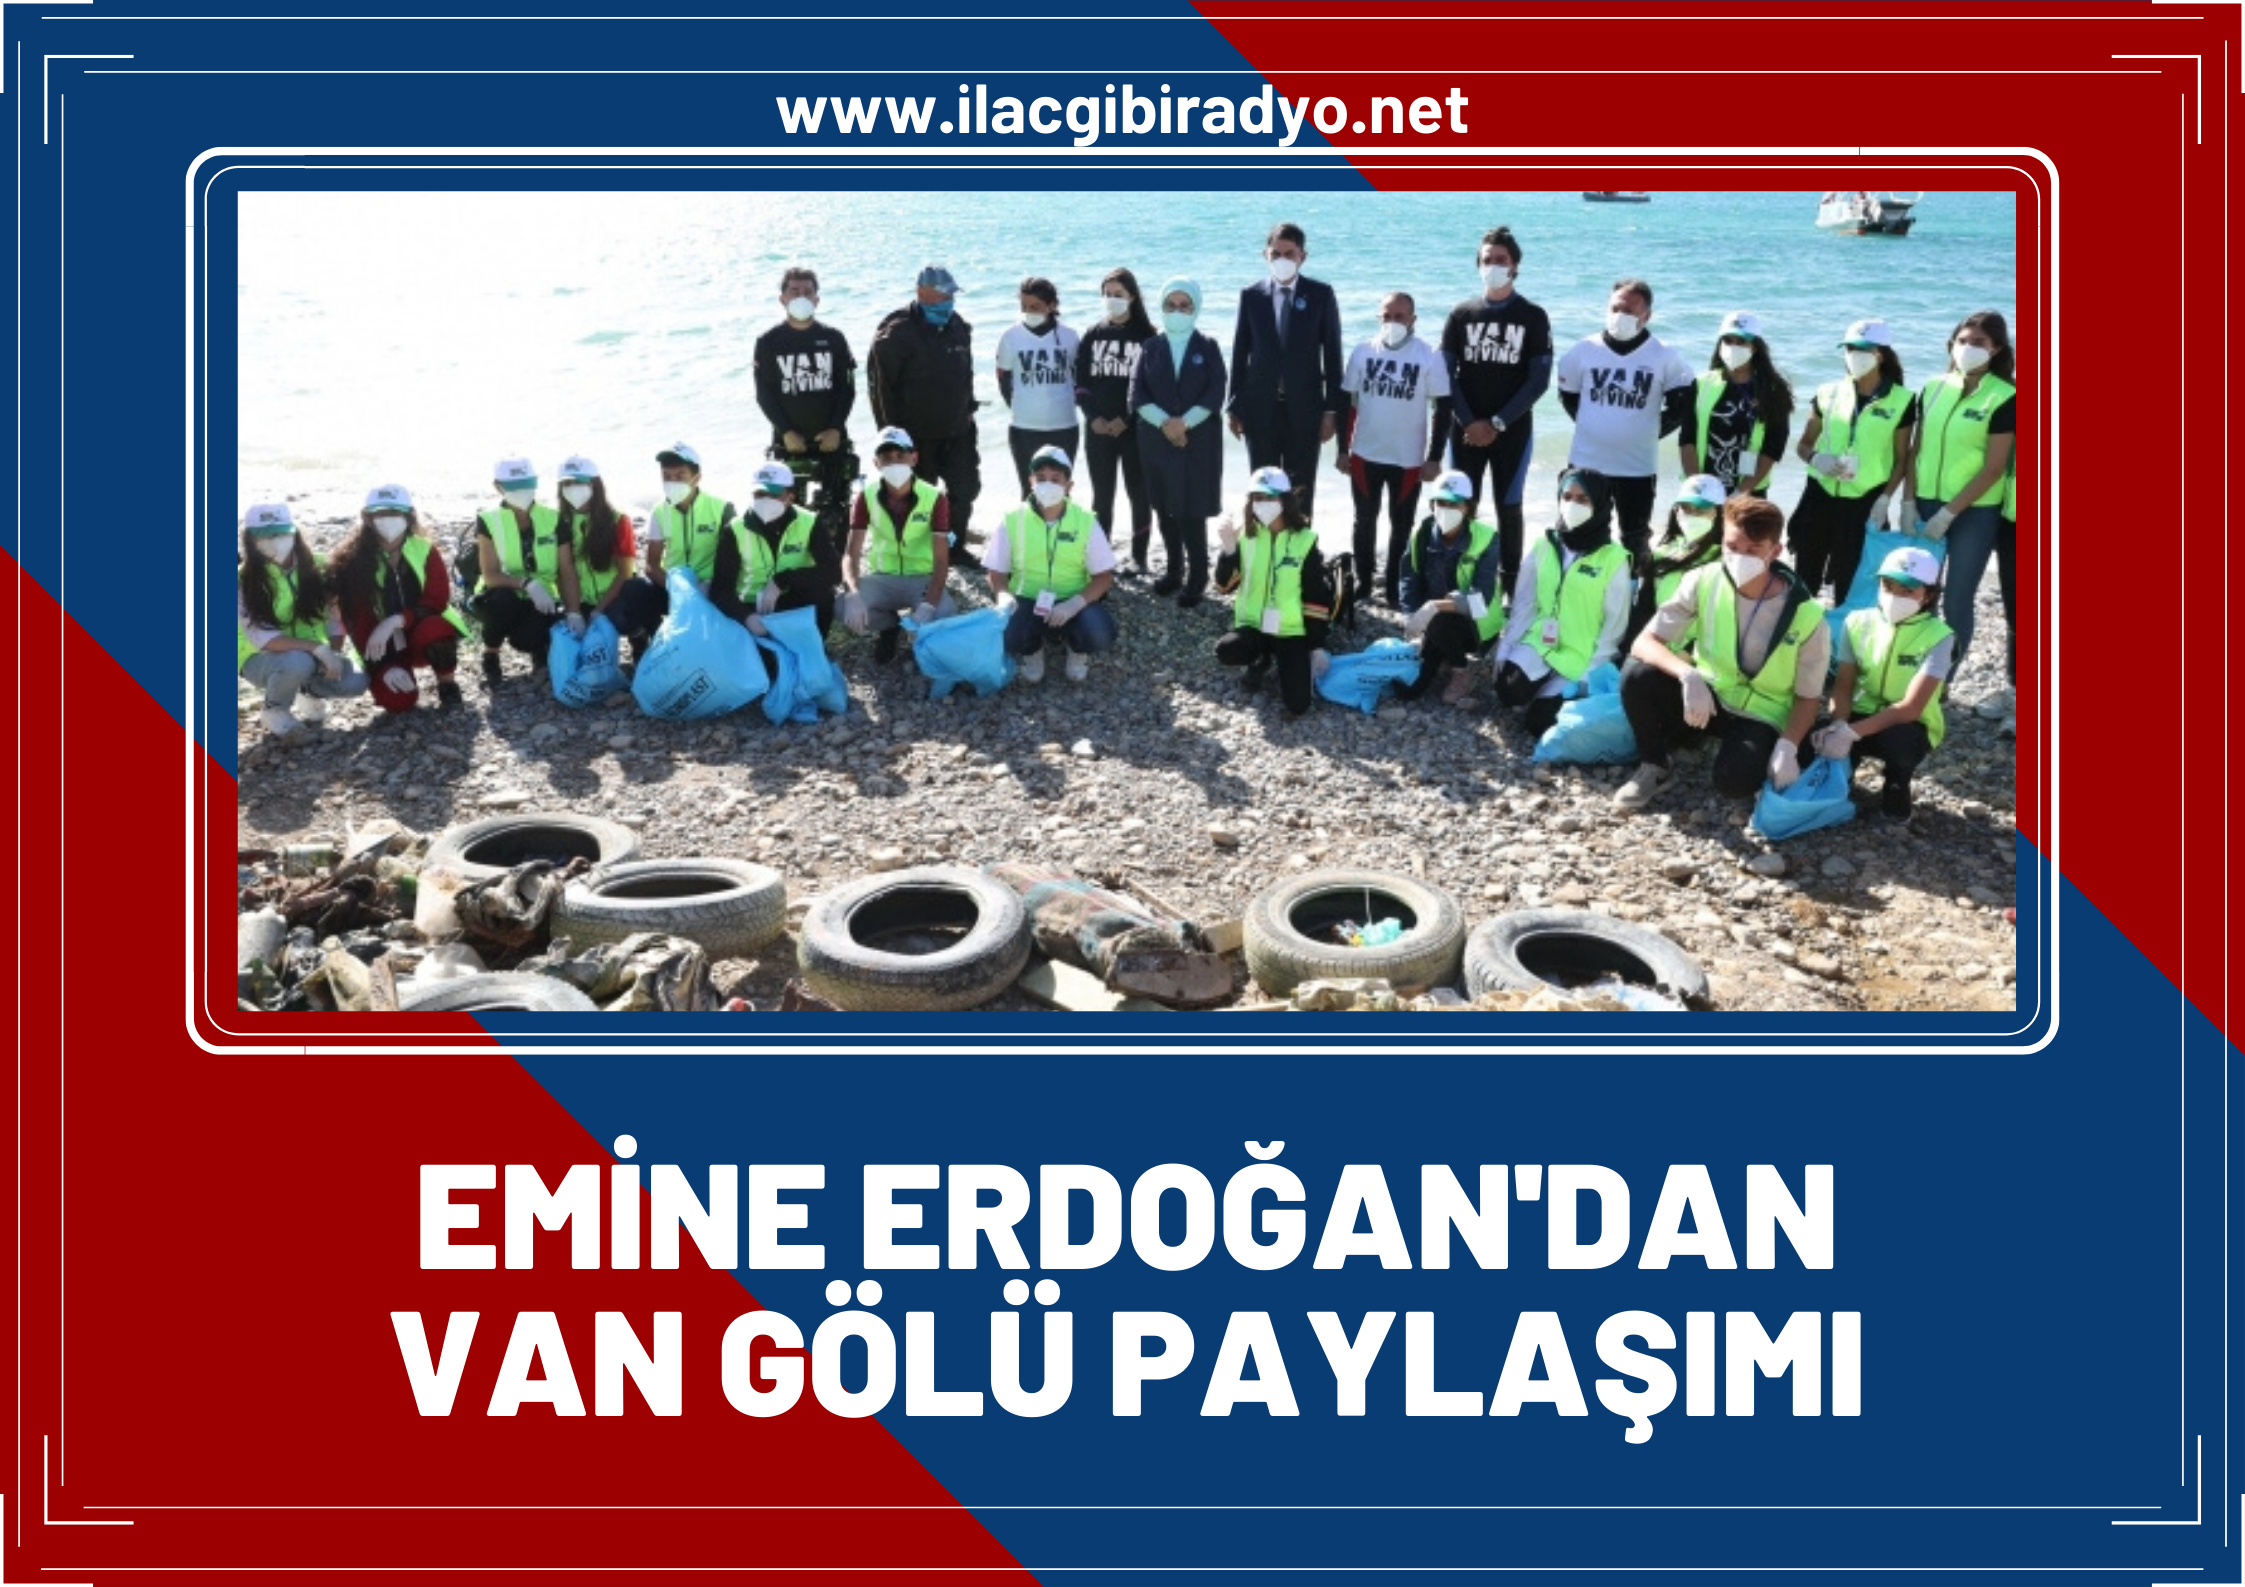 Cumhurbaşkanı Erdoğan'ın eşi Emine Erdoğan’dan Van Gölü paylaşımı: Bu sadece bir başlangıç!